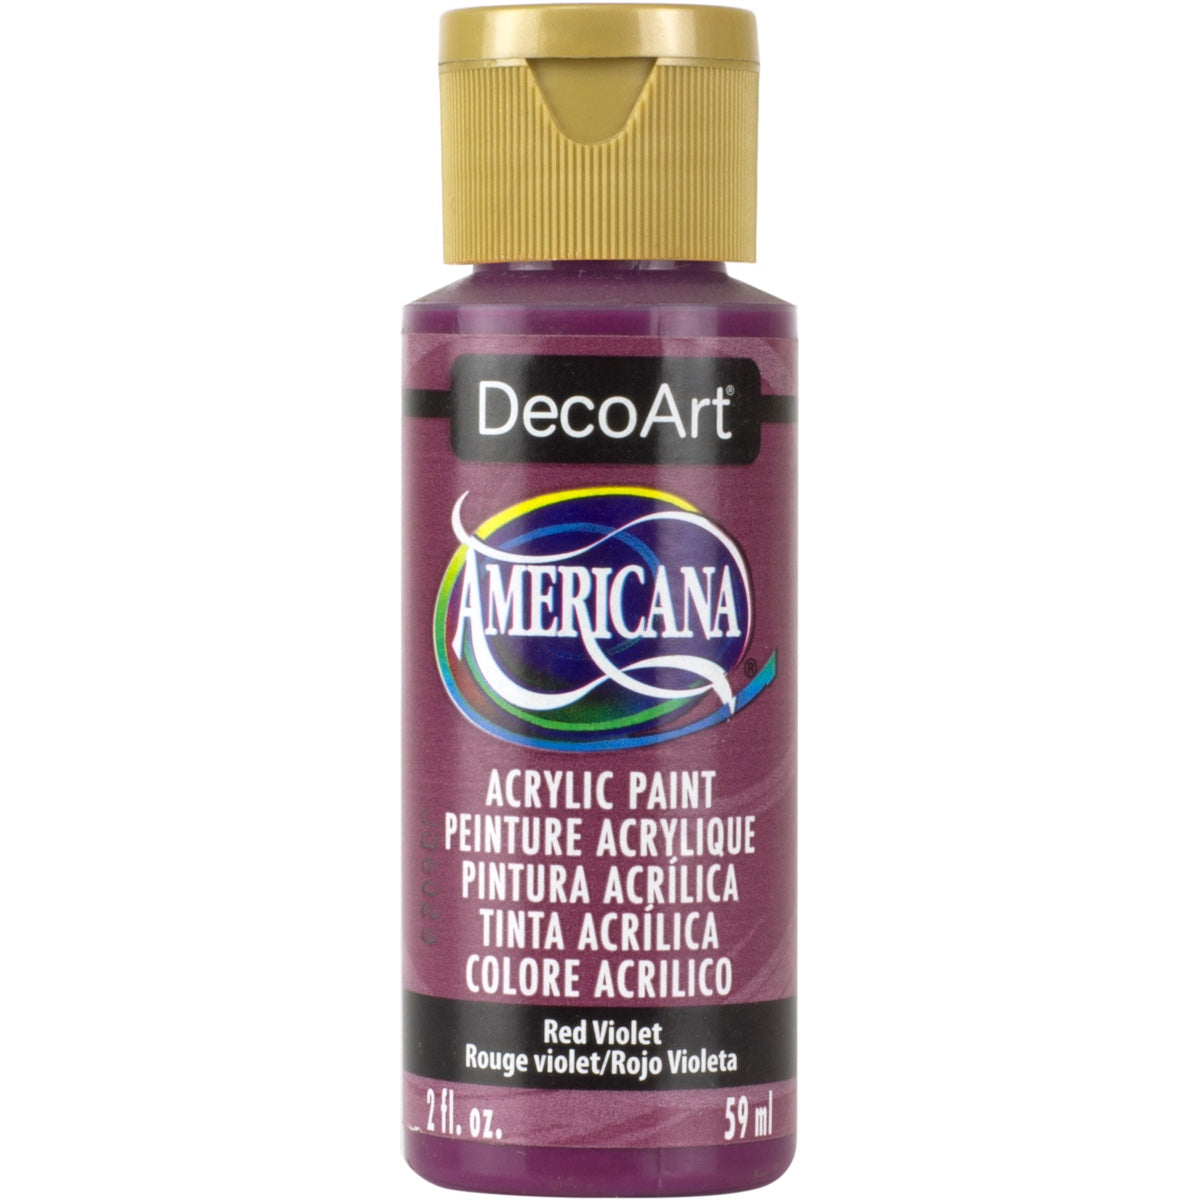 DecoArt Americana acrylic 2oz bottle in Red Violet